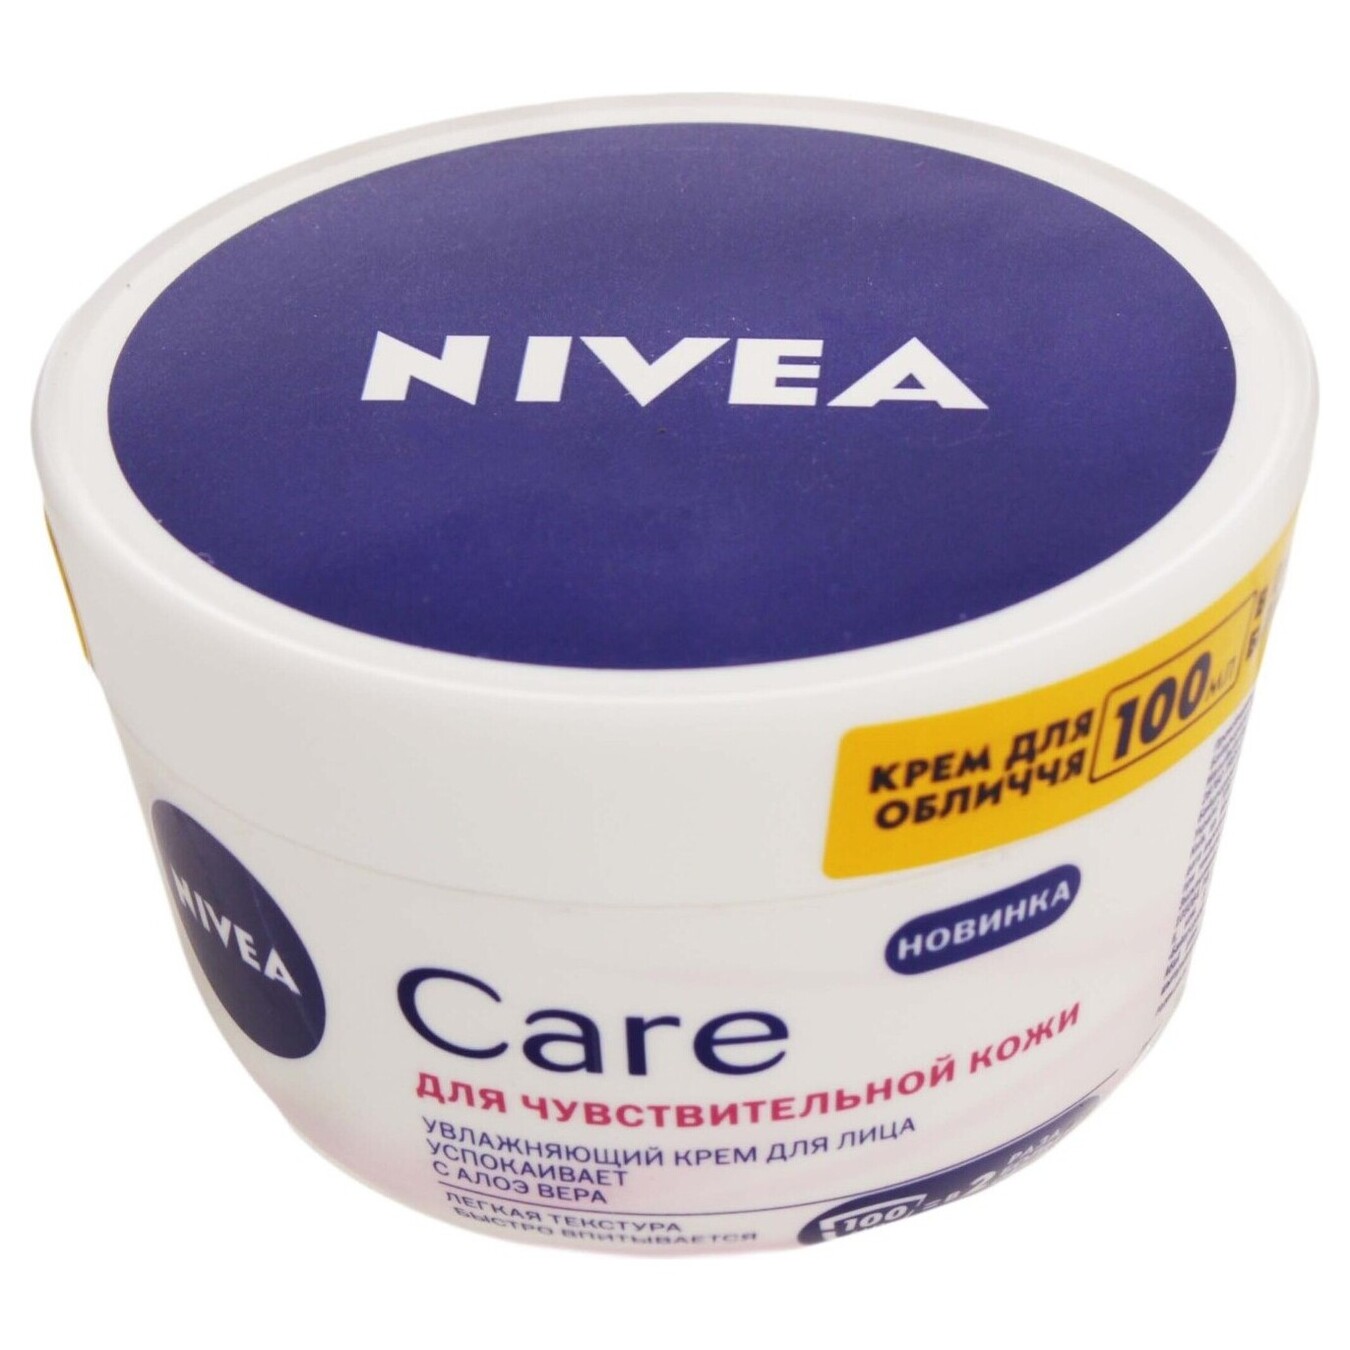 Крем Nivea Care увлажняющий для чувствительной кожи 100 мл 2